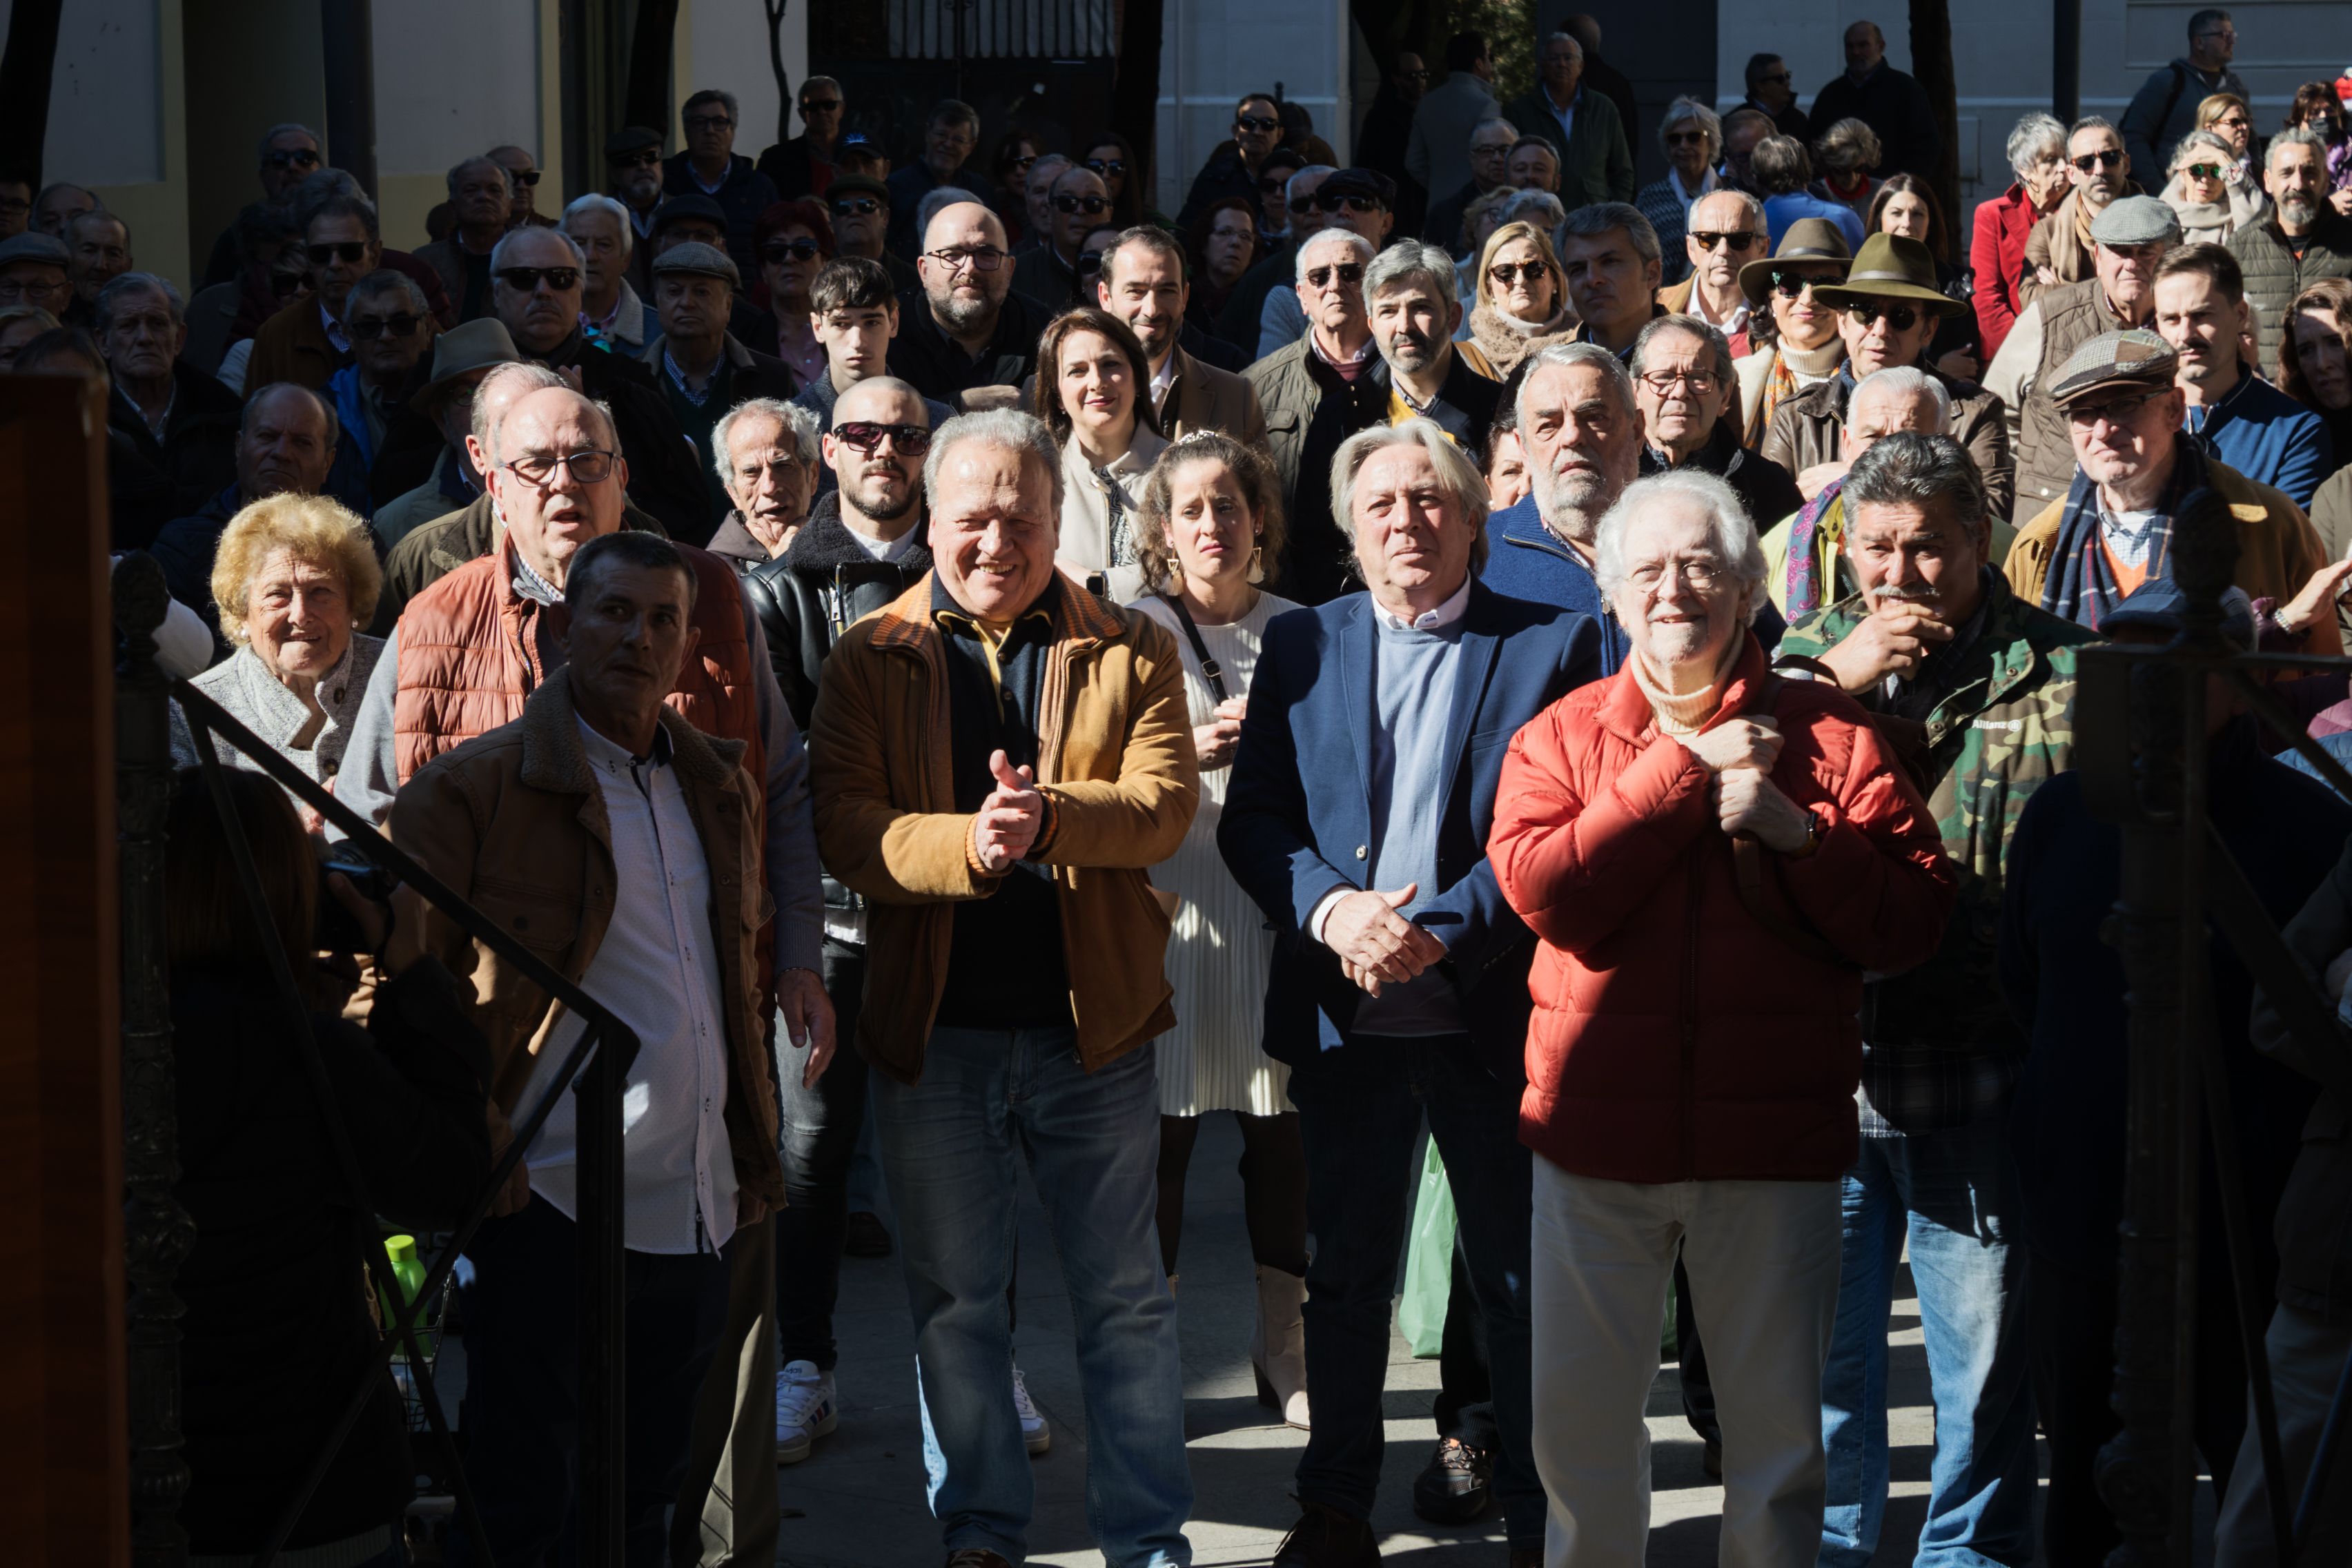 Concentración de la plataforma pro-indulto de Pacheco, con el protagonista del evento y, a su lado, Alejandro Rojas Marcos, entre otros muchos rostros conocidos, este sábado en Jerez.